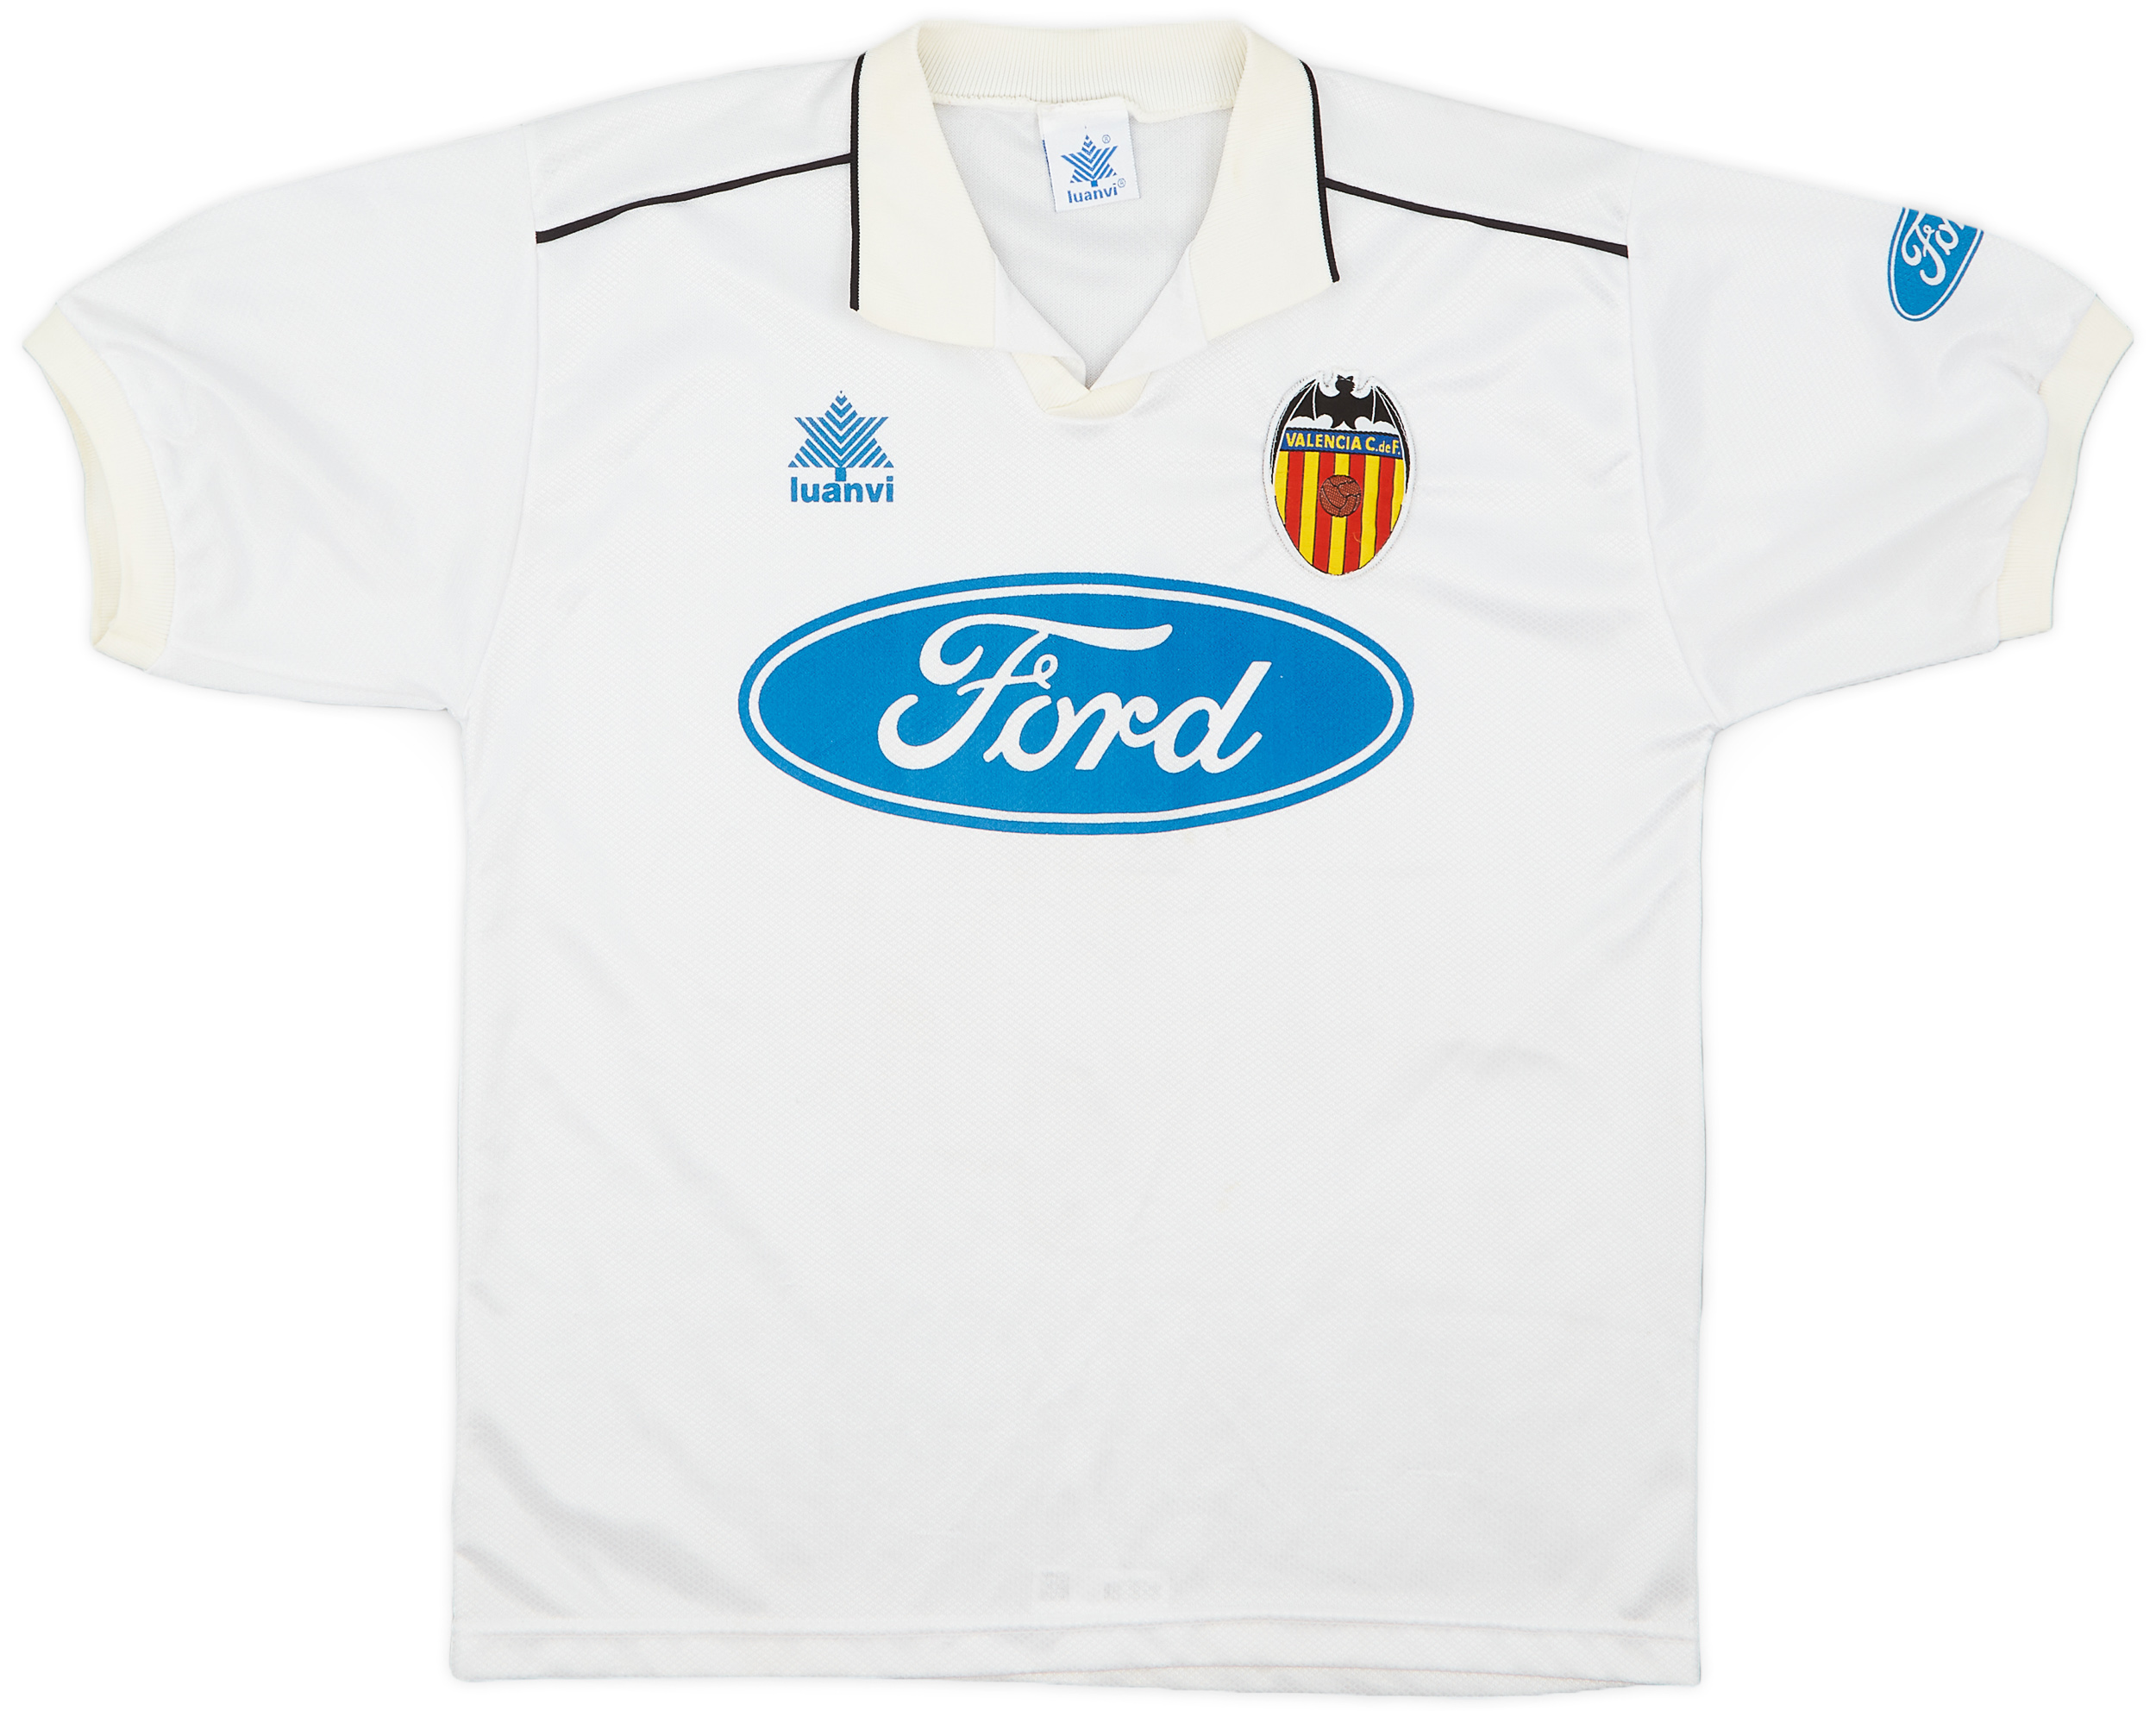 1996-97 Valencia Home Shirt - 8/10 - ()